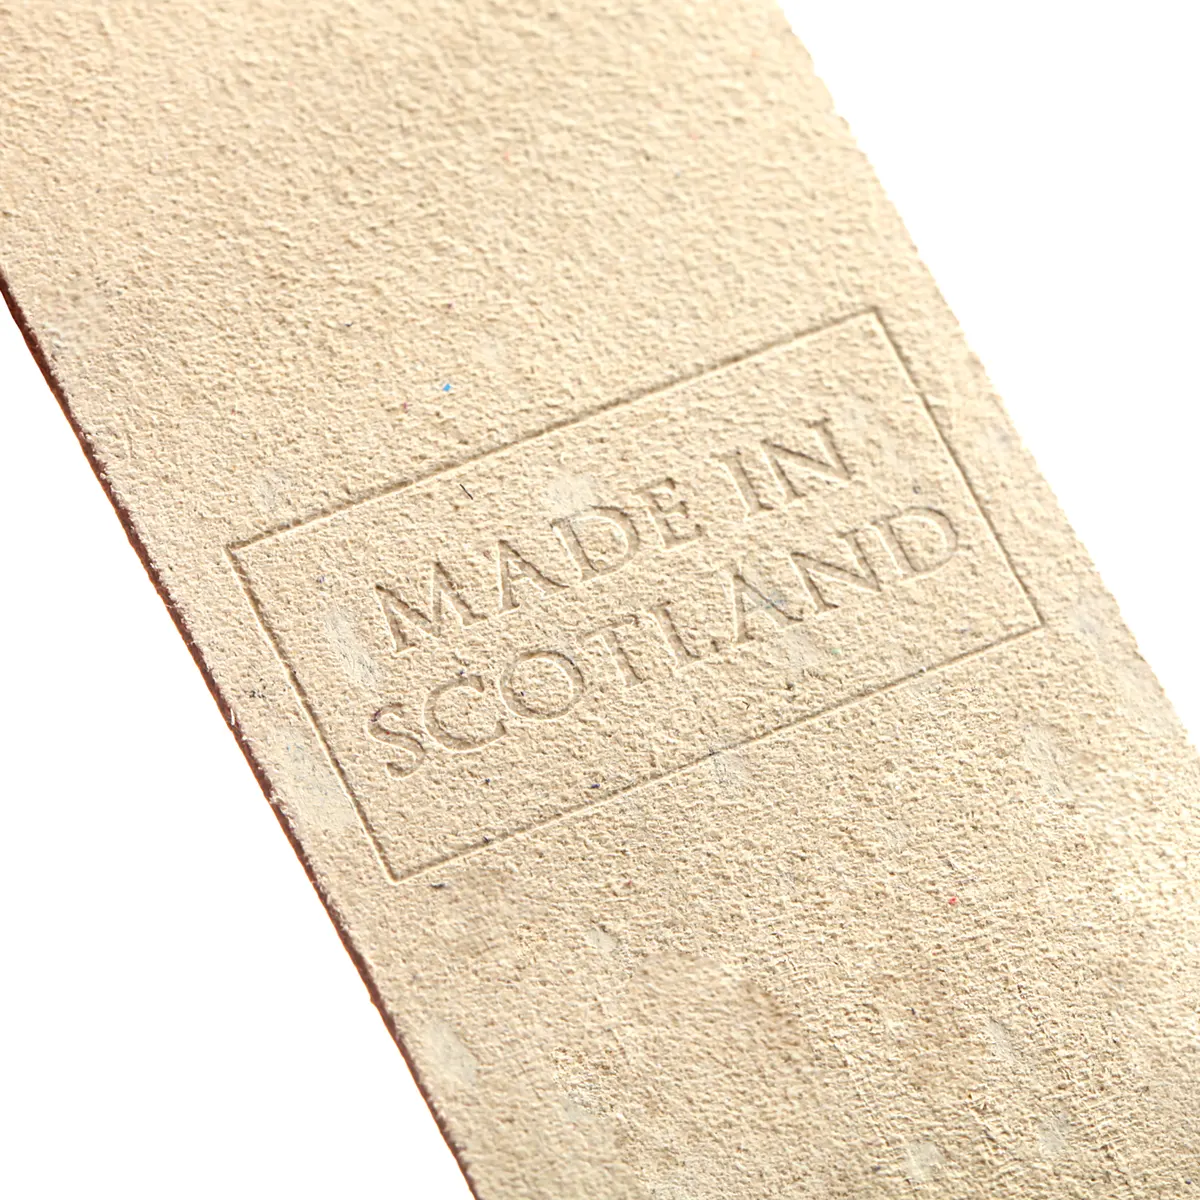 Orkney Islands - Lesezeichen aus Leder in Creme - Made in Scotland